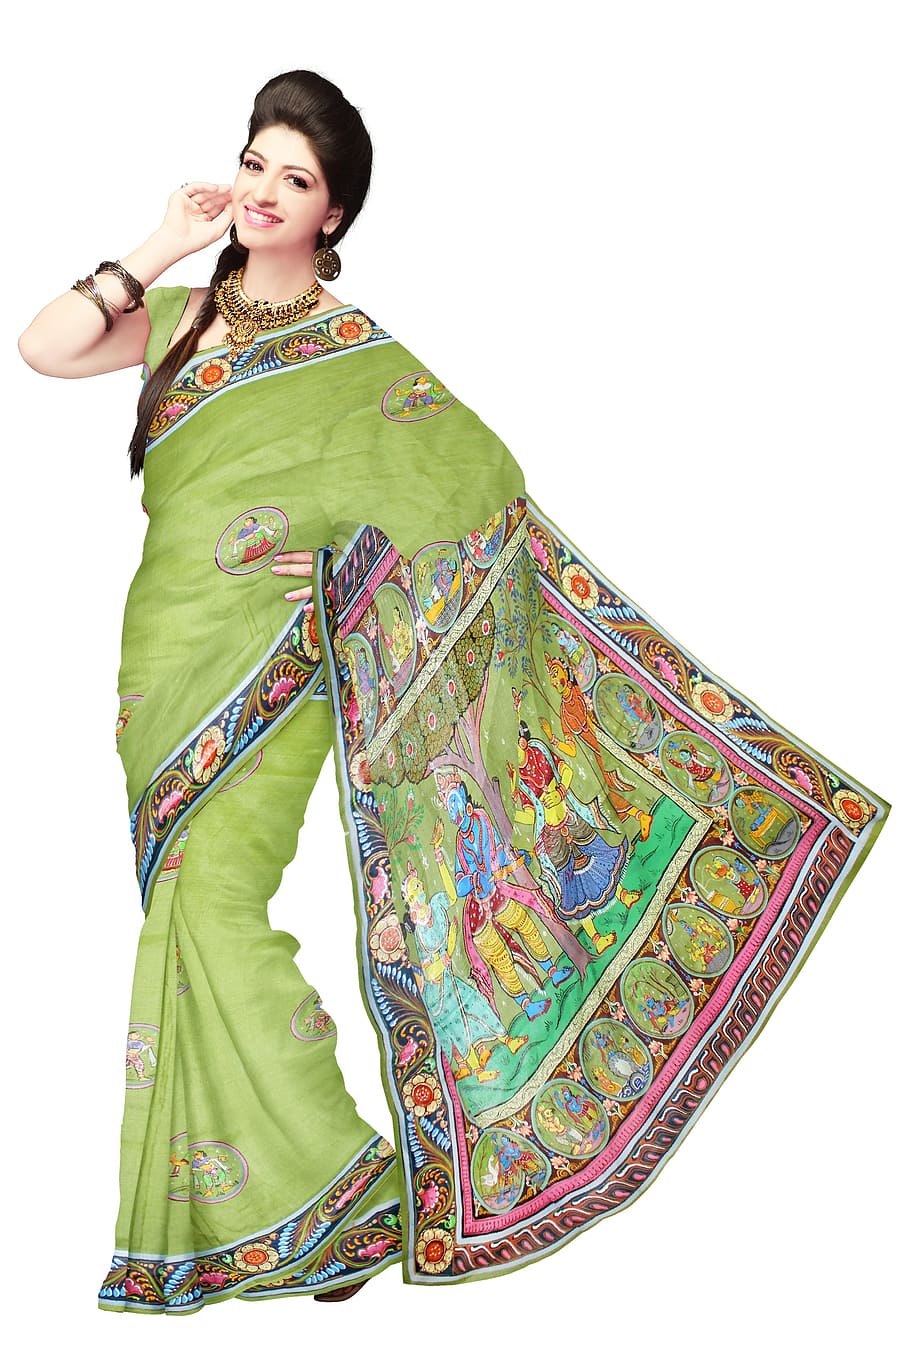 mujeres, verde, vestido de sari, sari, moda, seda, vestido, mujer, modelo, ropa